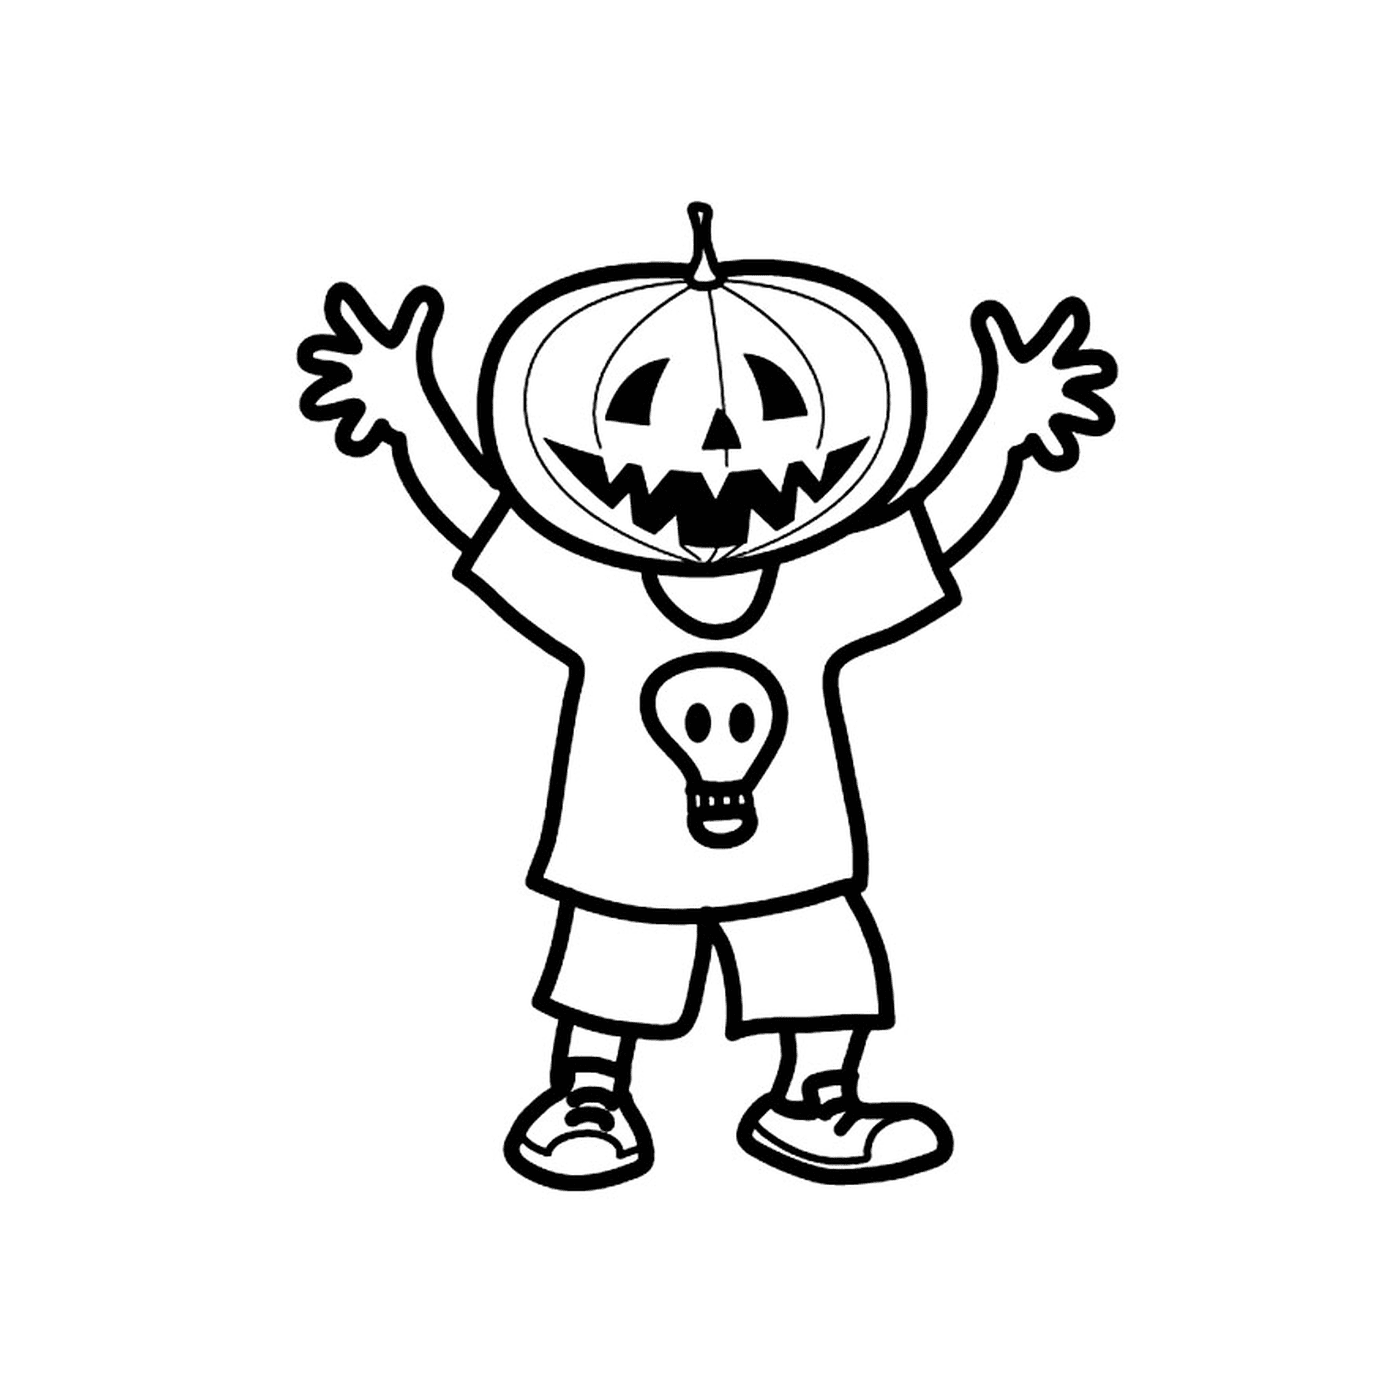  Child with pumpkin head 